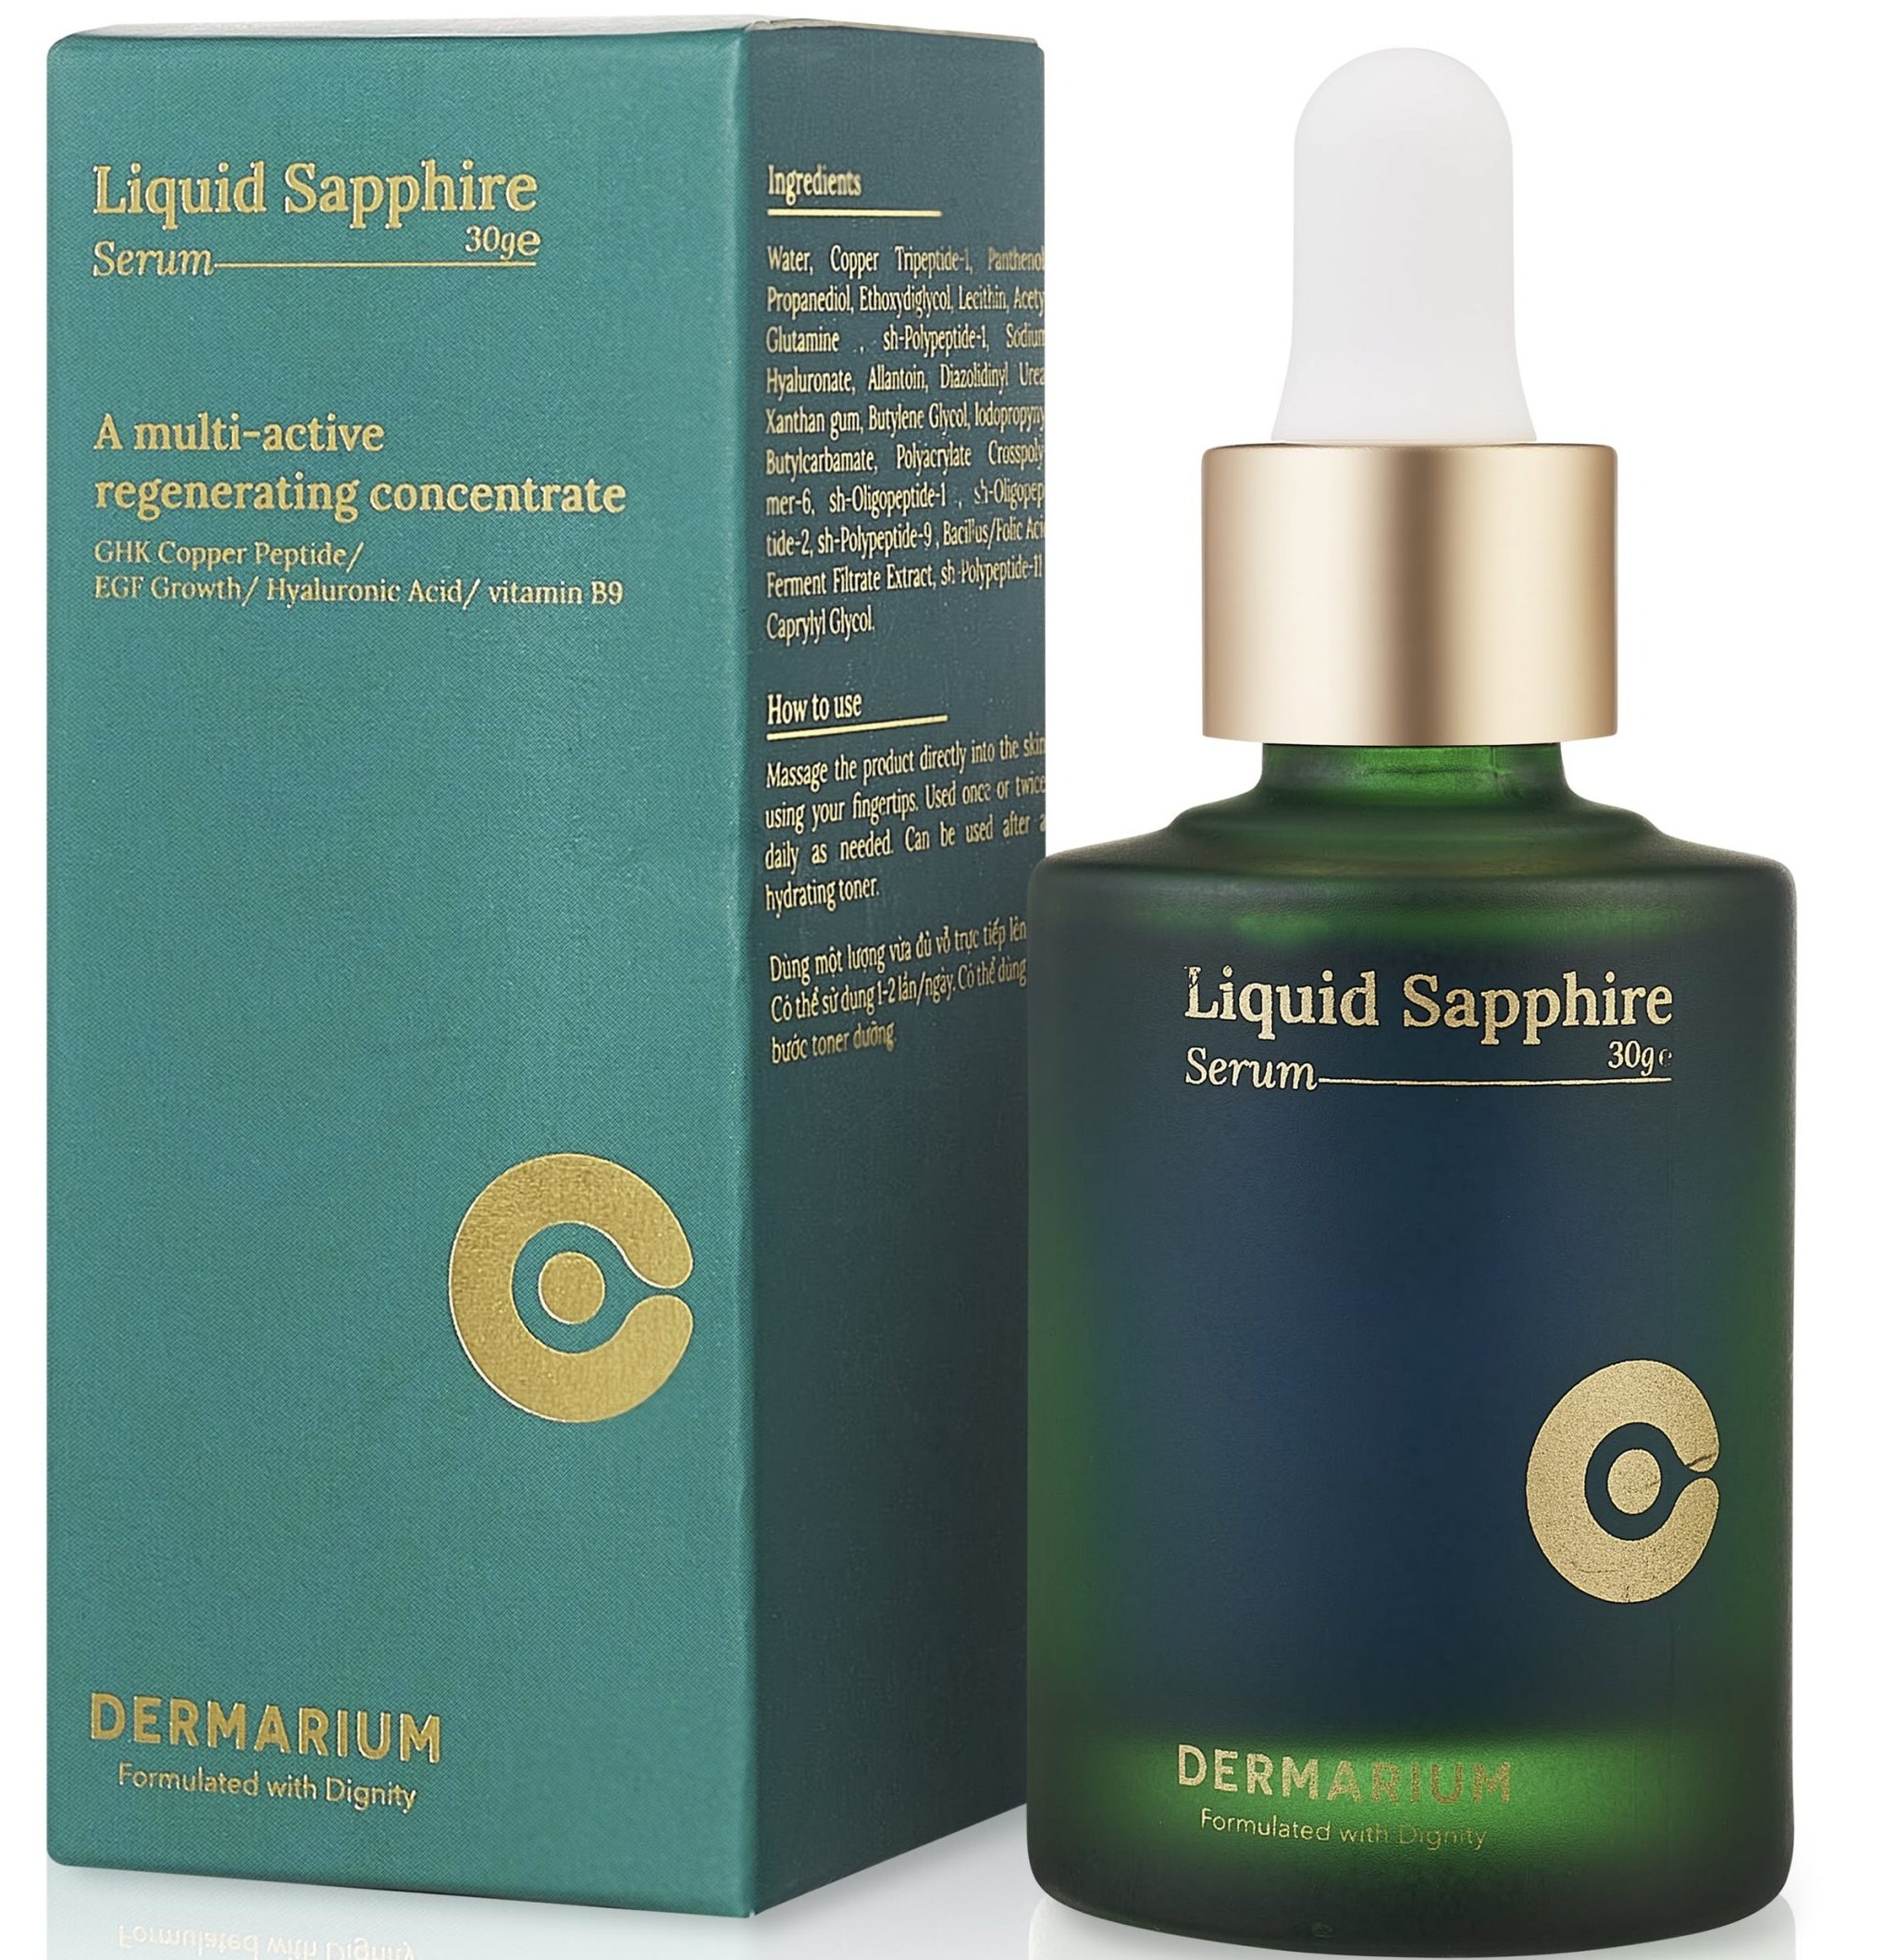 The Dermarium Liquid Sapphire Serum